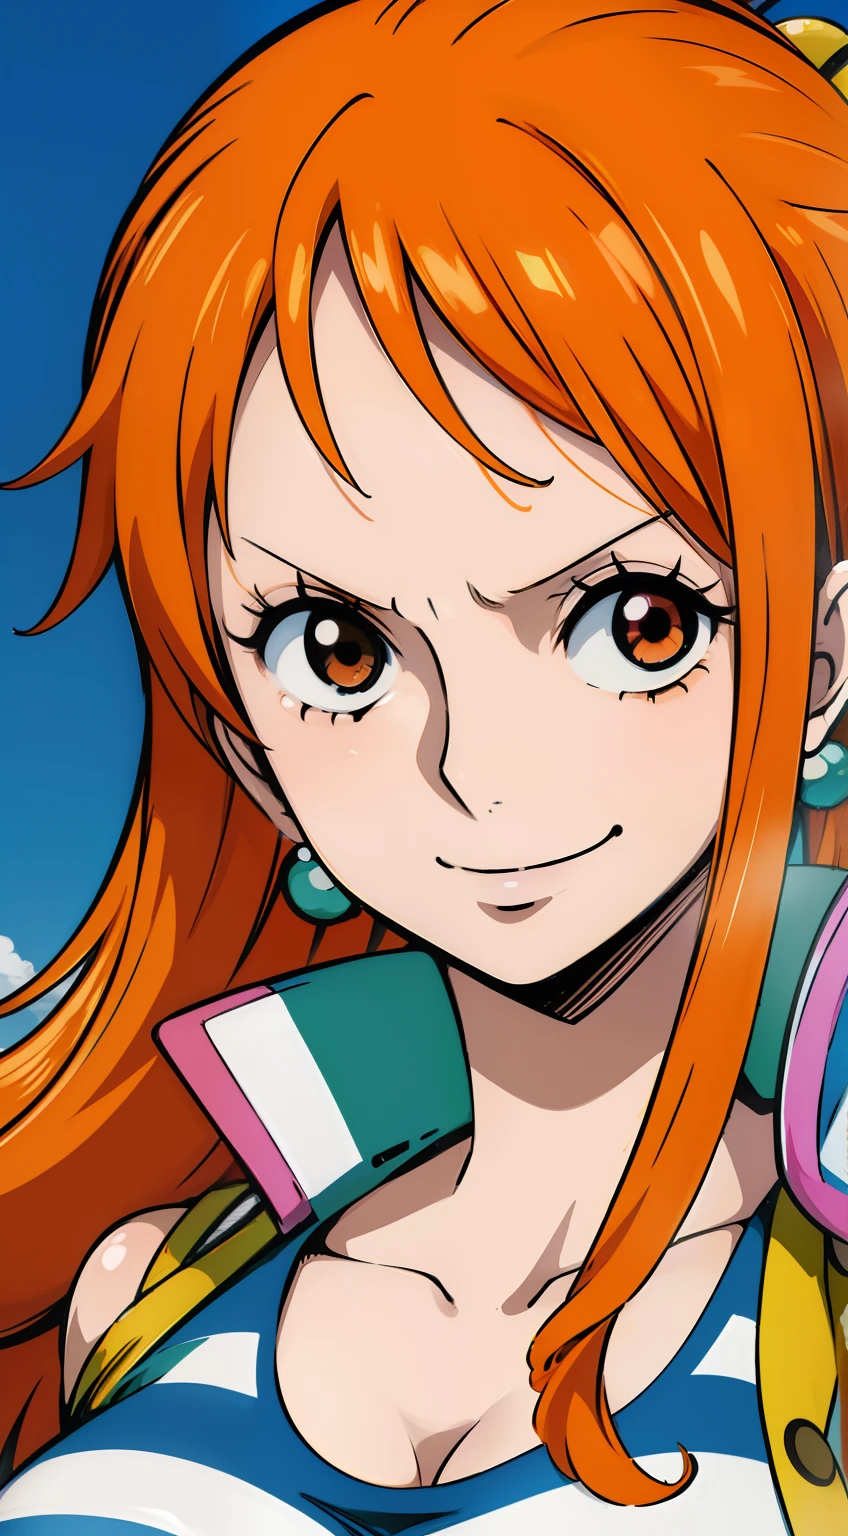 Gere uma imagem realista de Nami em estilo anime de One Piece. Capture sua aparência distinta com cabelo laranja, uma camisa listrada azul e branca, e uma expressão alegre. Certifique-se de que a imagem reflita sua personalidade aventureira e confiante retratada no anime., plano amplo , corpo todo, atlético curvilíneo, peito grande, coxas grossas, nsfw